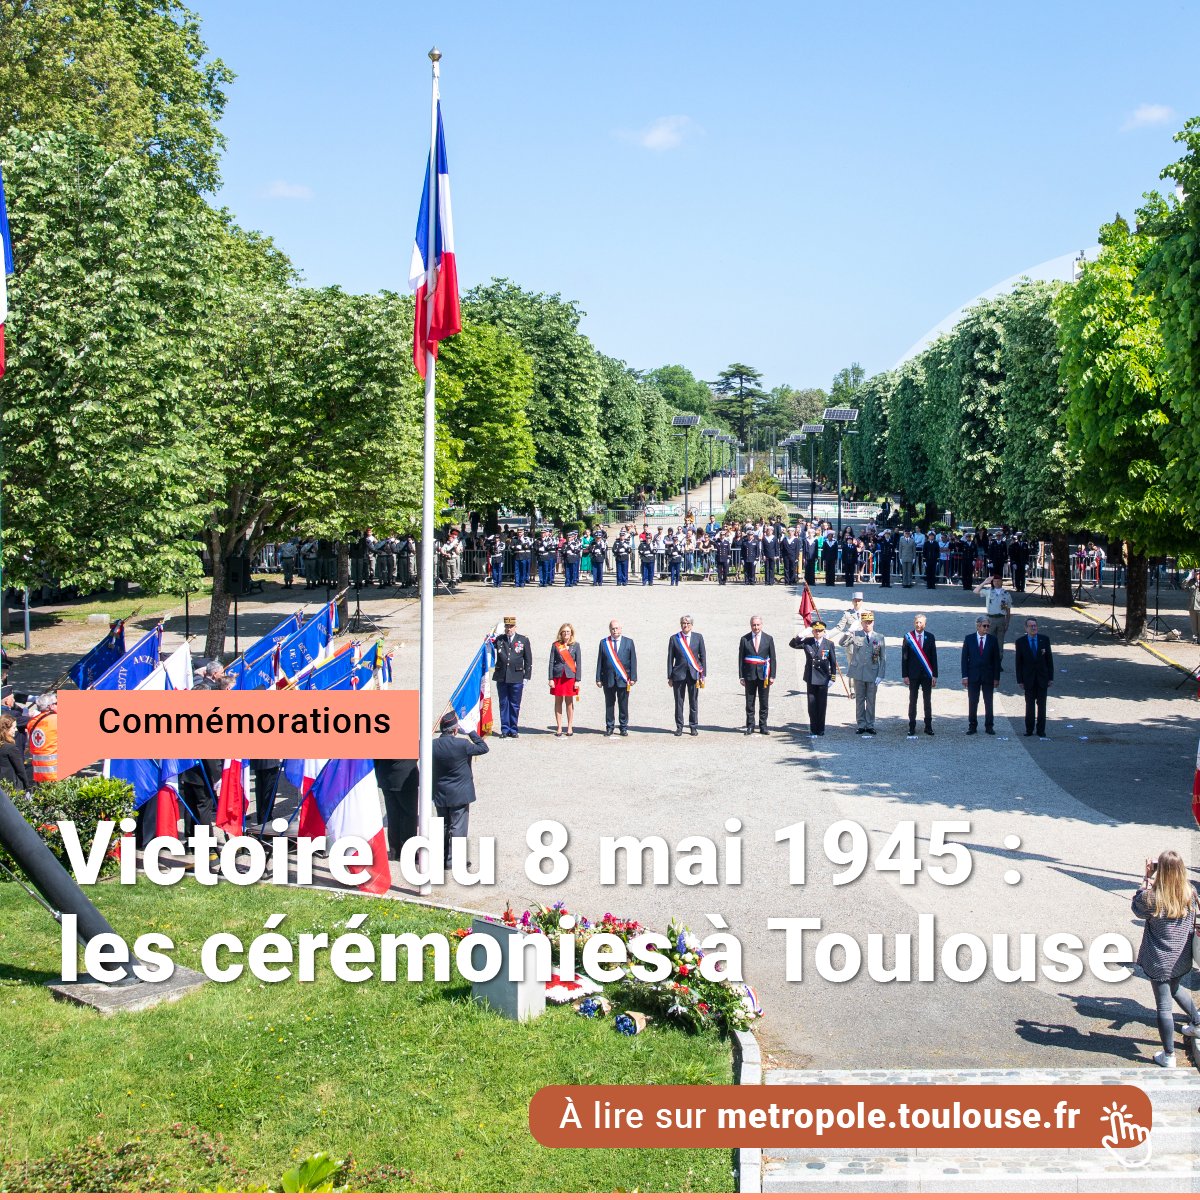 À l’occasion du 79e anniversaire de la Victoire du 8 mai 1945, retrouvez les dates et horaires des cérémonies dans les quartiers de Toulouse afin de commémorer la fin de la Seconde Guerre mondiale. 🔗 bit.ly/8Mai45Toulouse